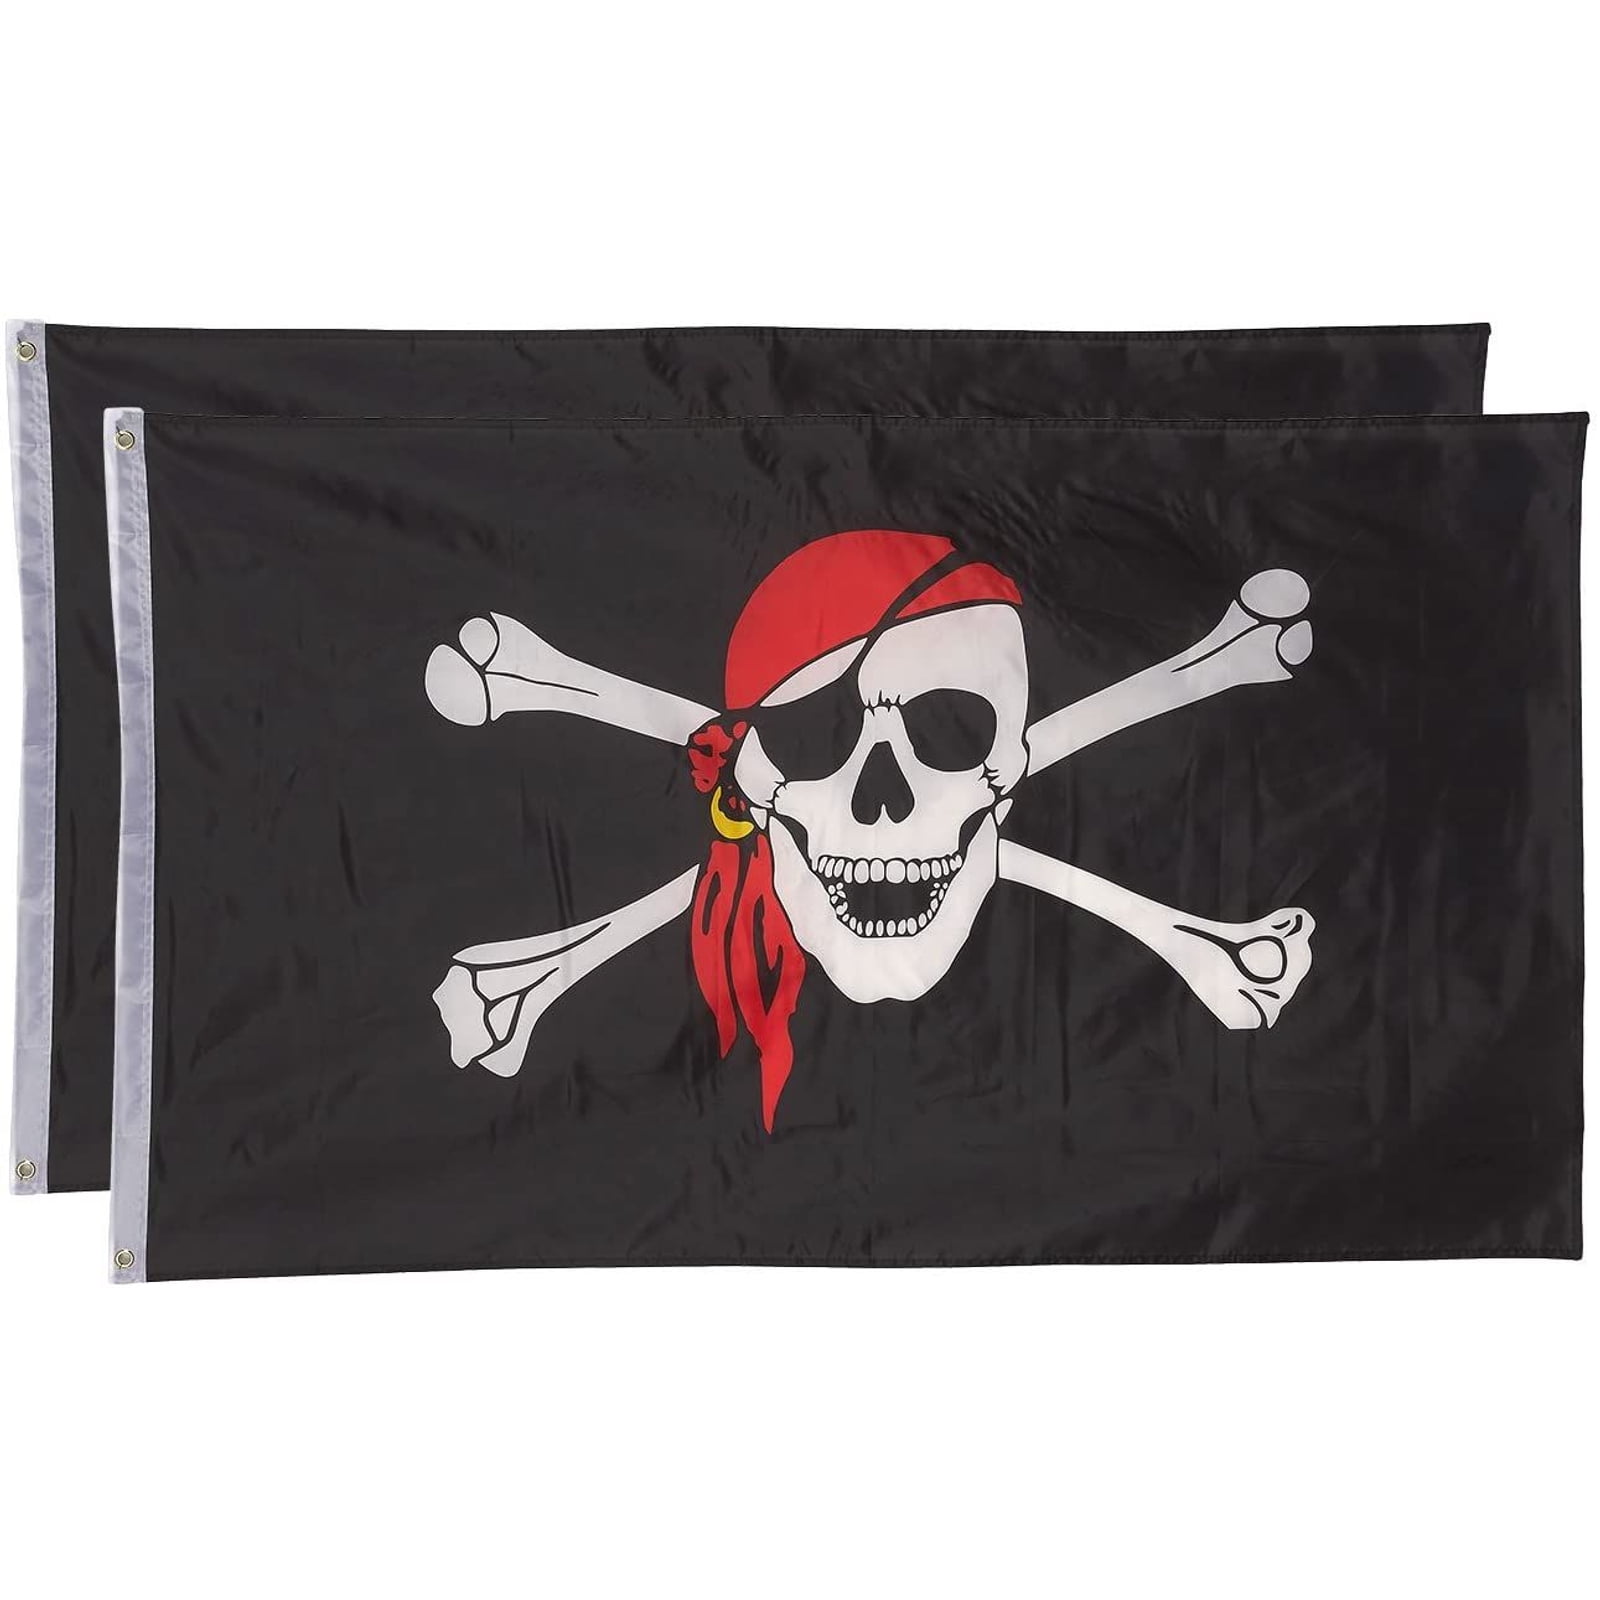 3x5 Pirate Rose Girl Skull 3'x5' Premium Quality Polyester Flag Banner Grommets 